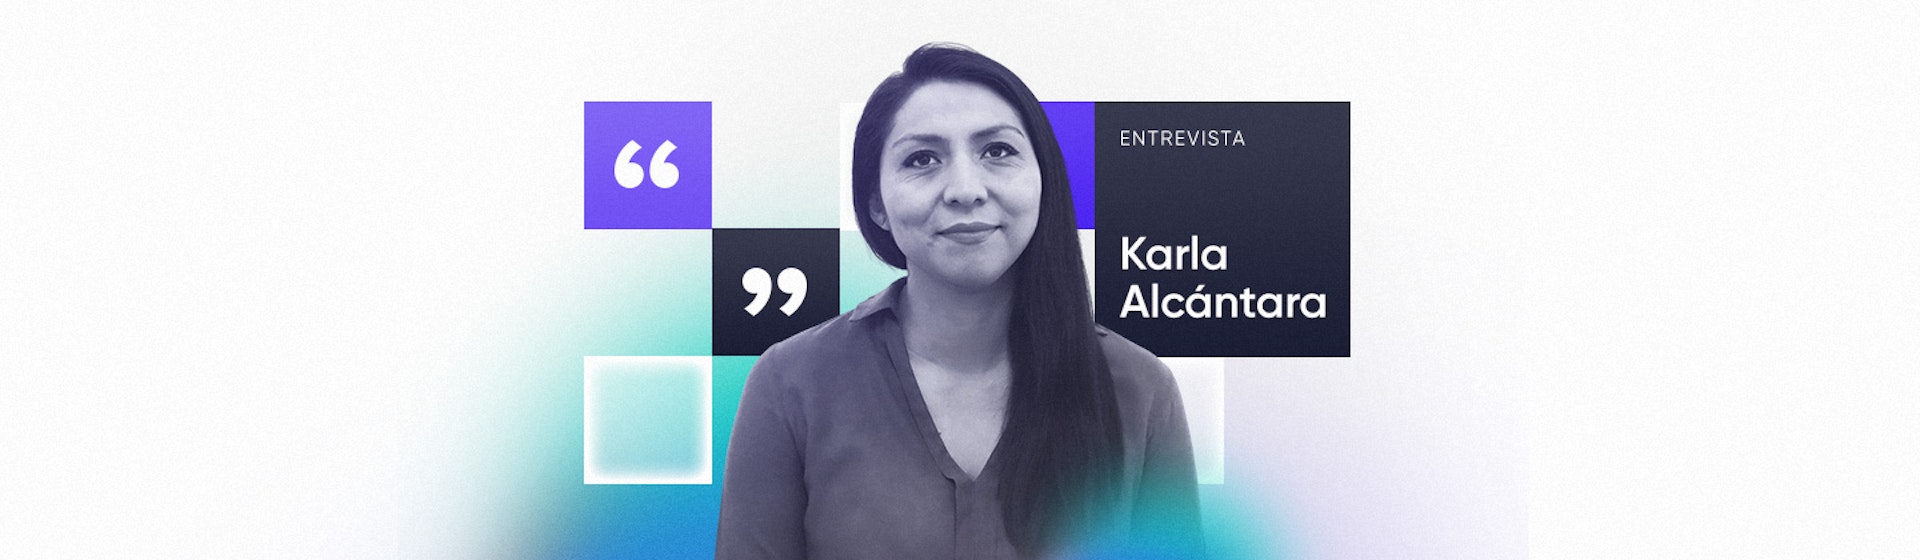 Karla Alcántara: "Un ambiente inclusivo tiene una cultura de respeto y apoyo para todas las personas"